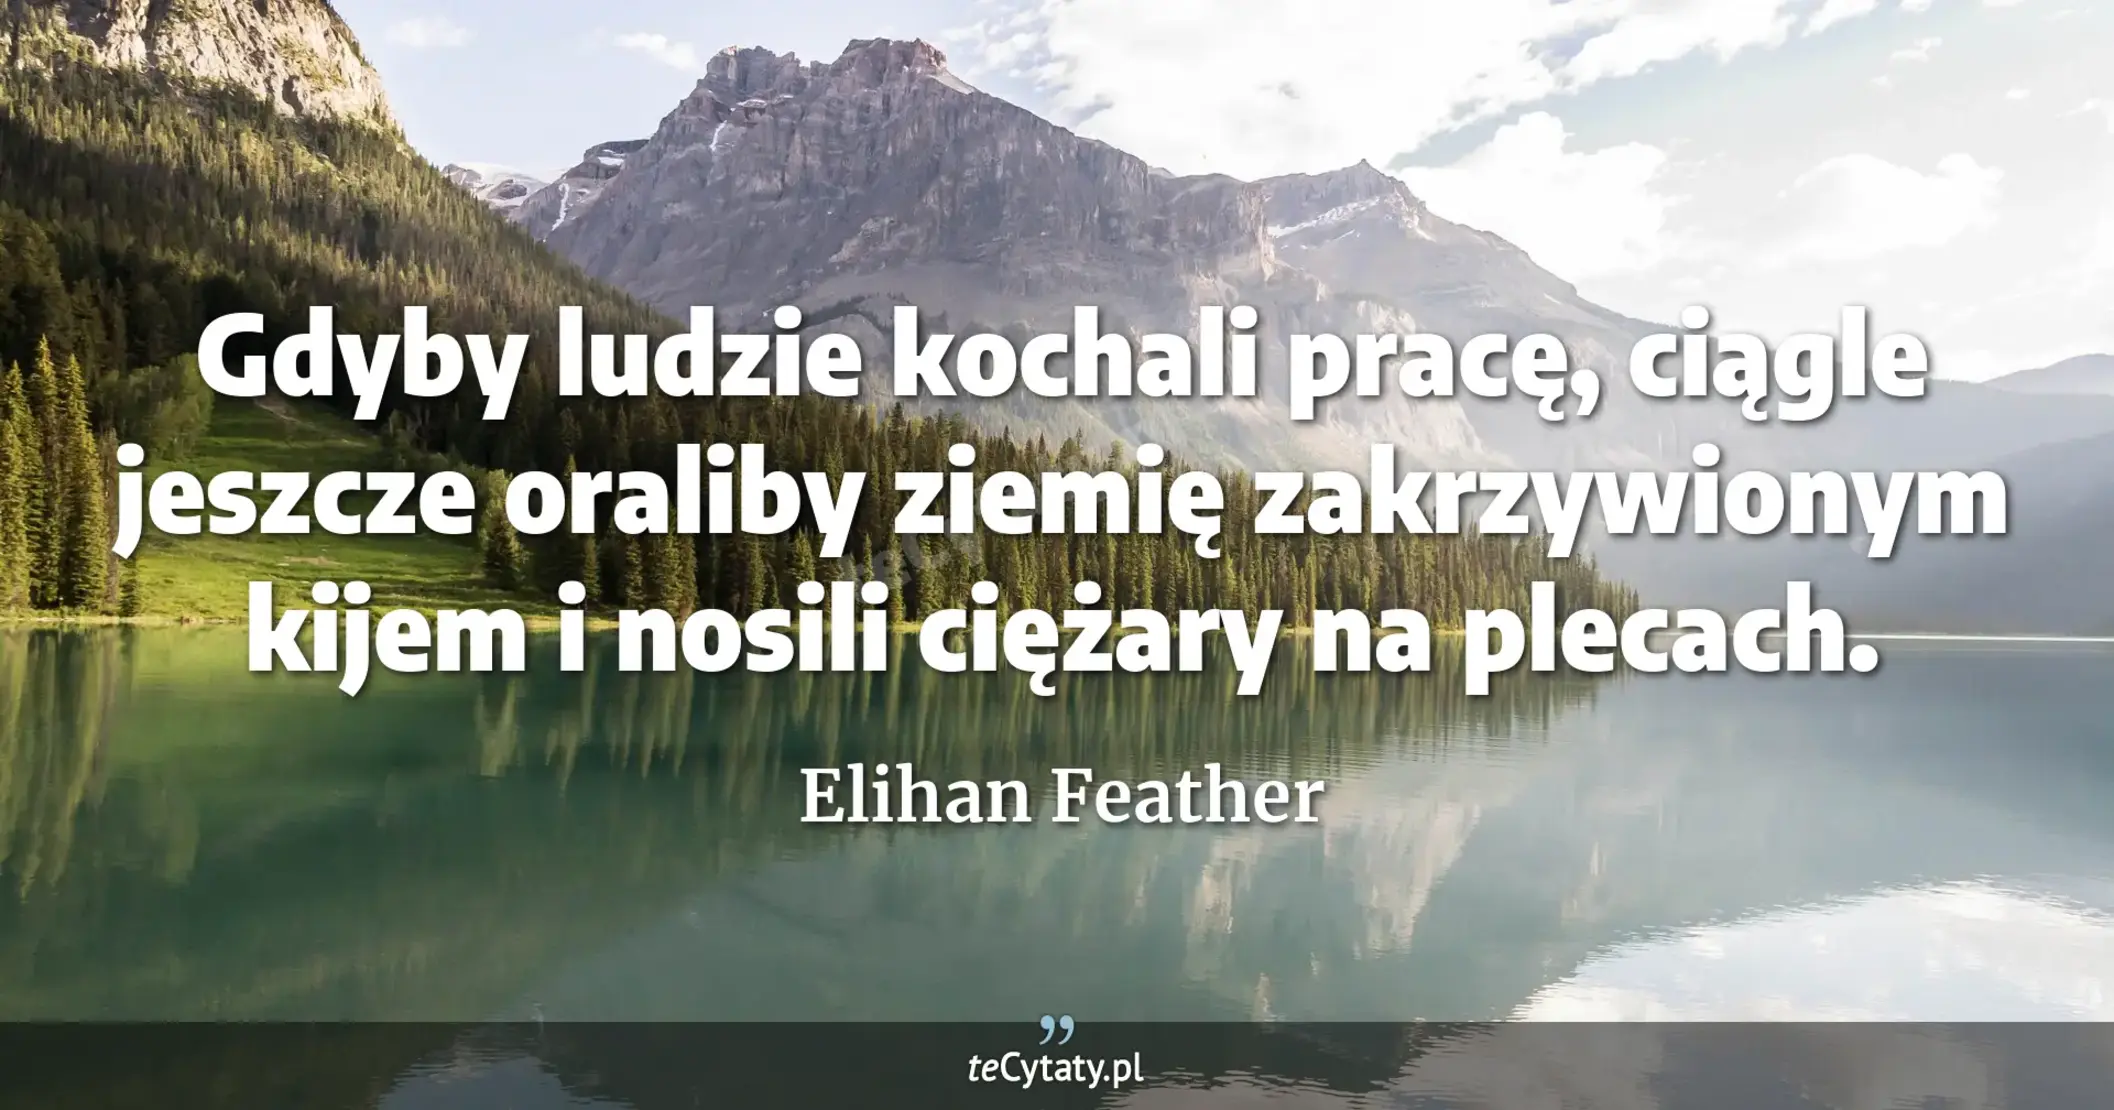 Gdyby ludzie kochali pracę, ciągle jeszcze oraliby ziemię zakrzywionym kijem i nosili ciężary na plecach. - Elihan Feather